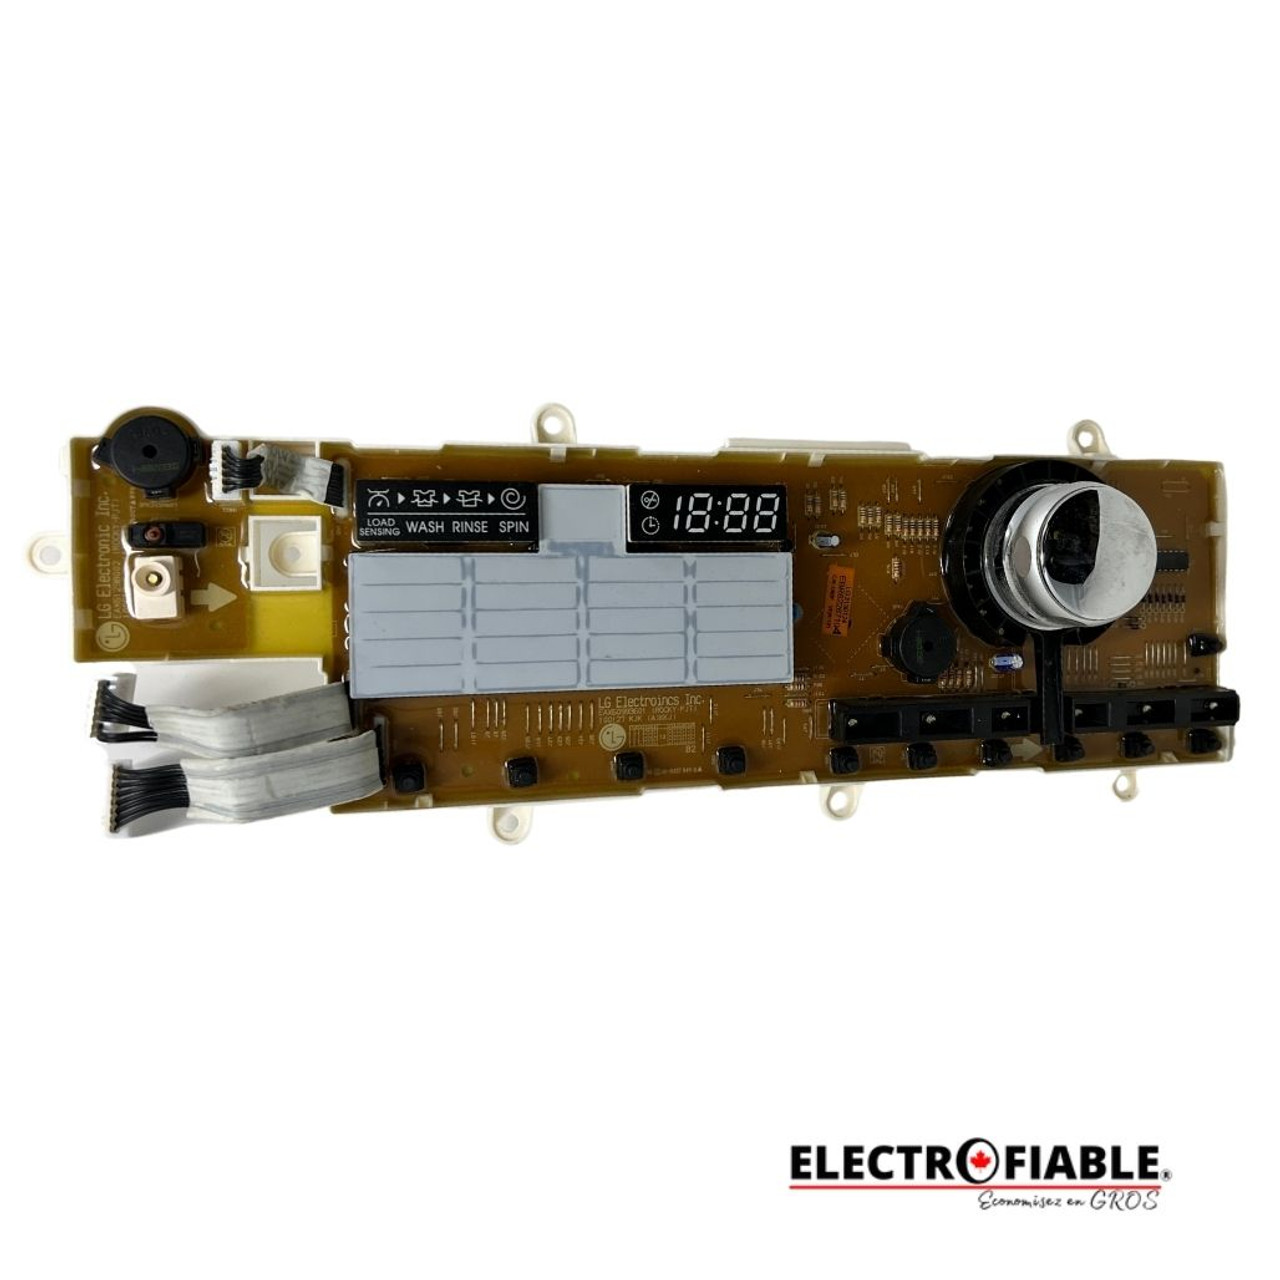 EBR62267104 Display Control Board For LG Washer